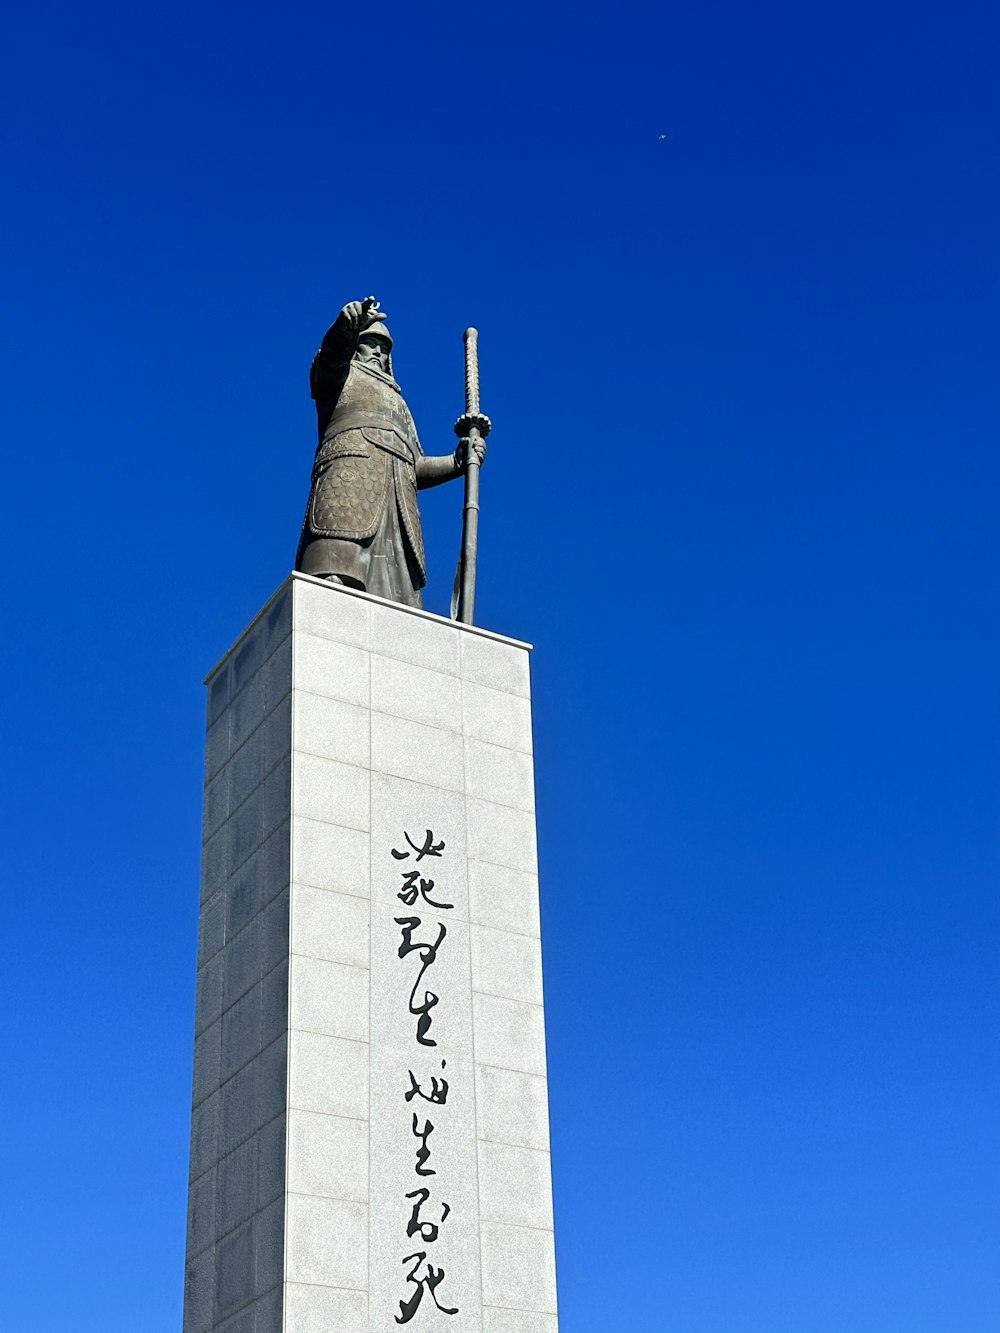 Una estatua de un hombre sosteniendo una espada frente a un cielo azul